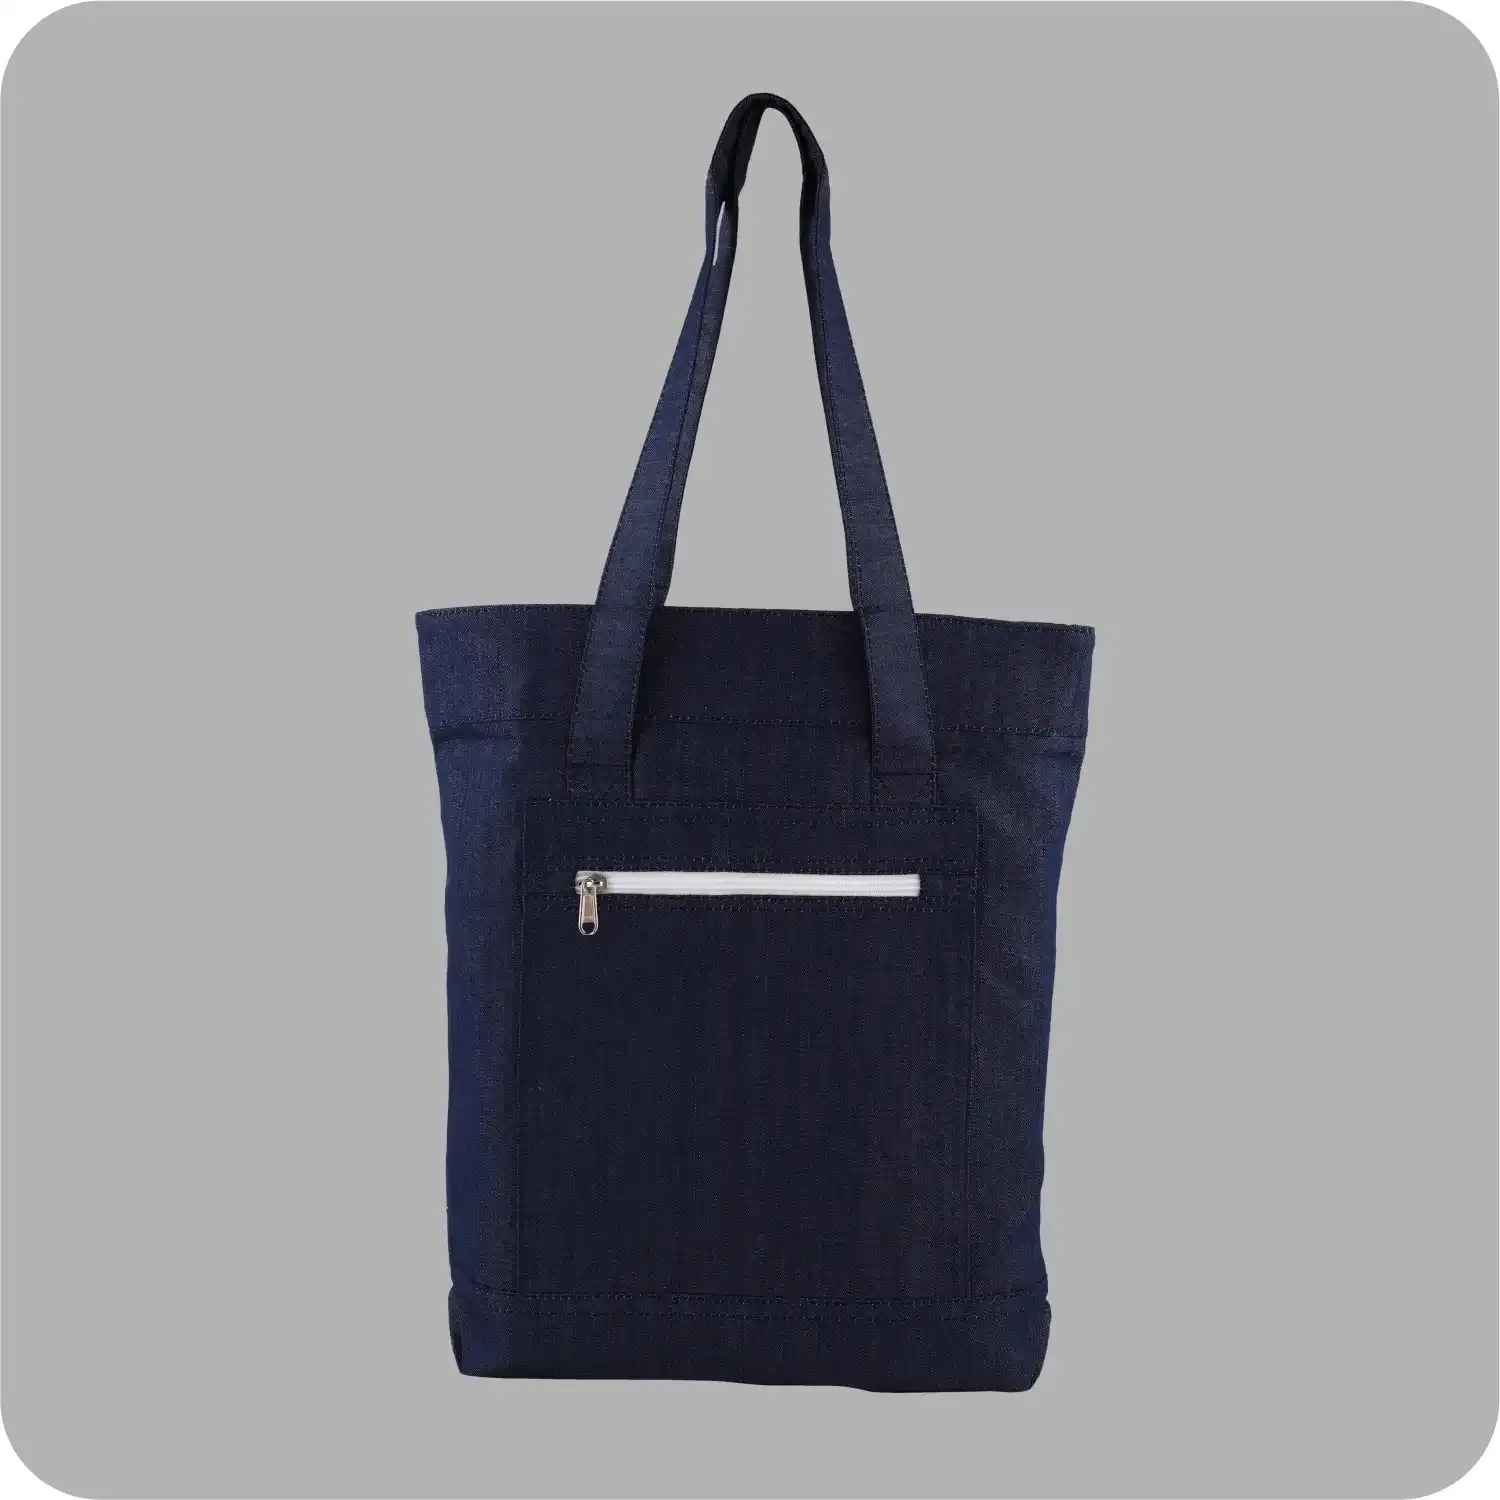 Denim Tote Bag Shopping Bag Promotional Bag Conference Bag Institutional bag-05